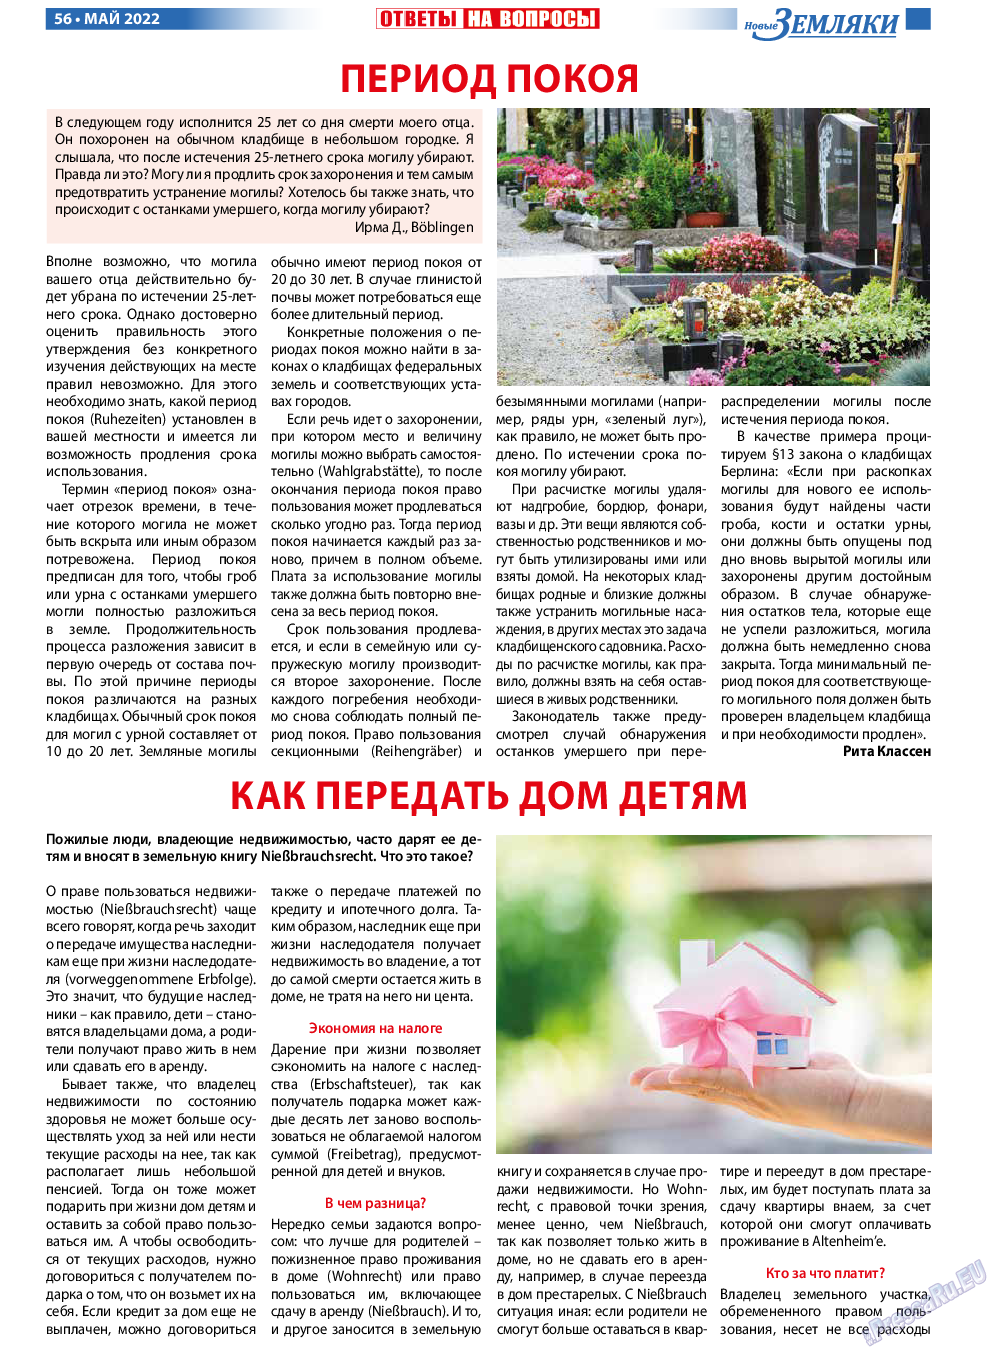 Новые Земляки, газета. 2022 №5 стр.56